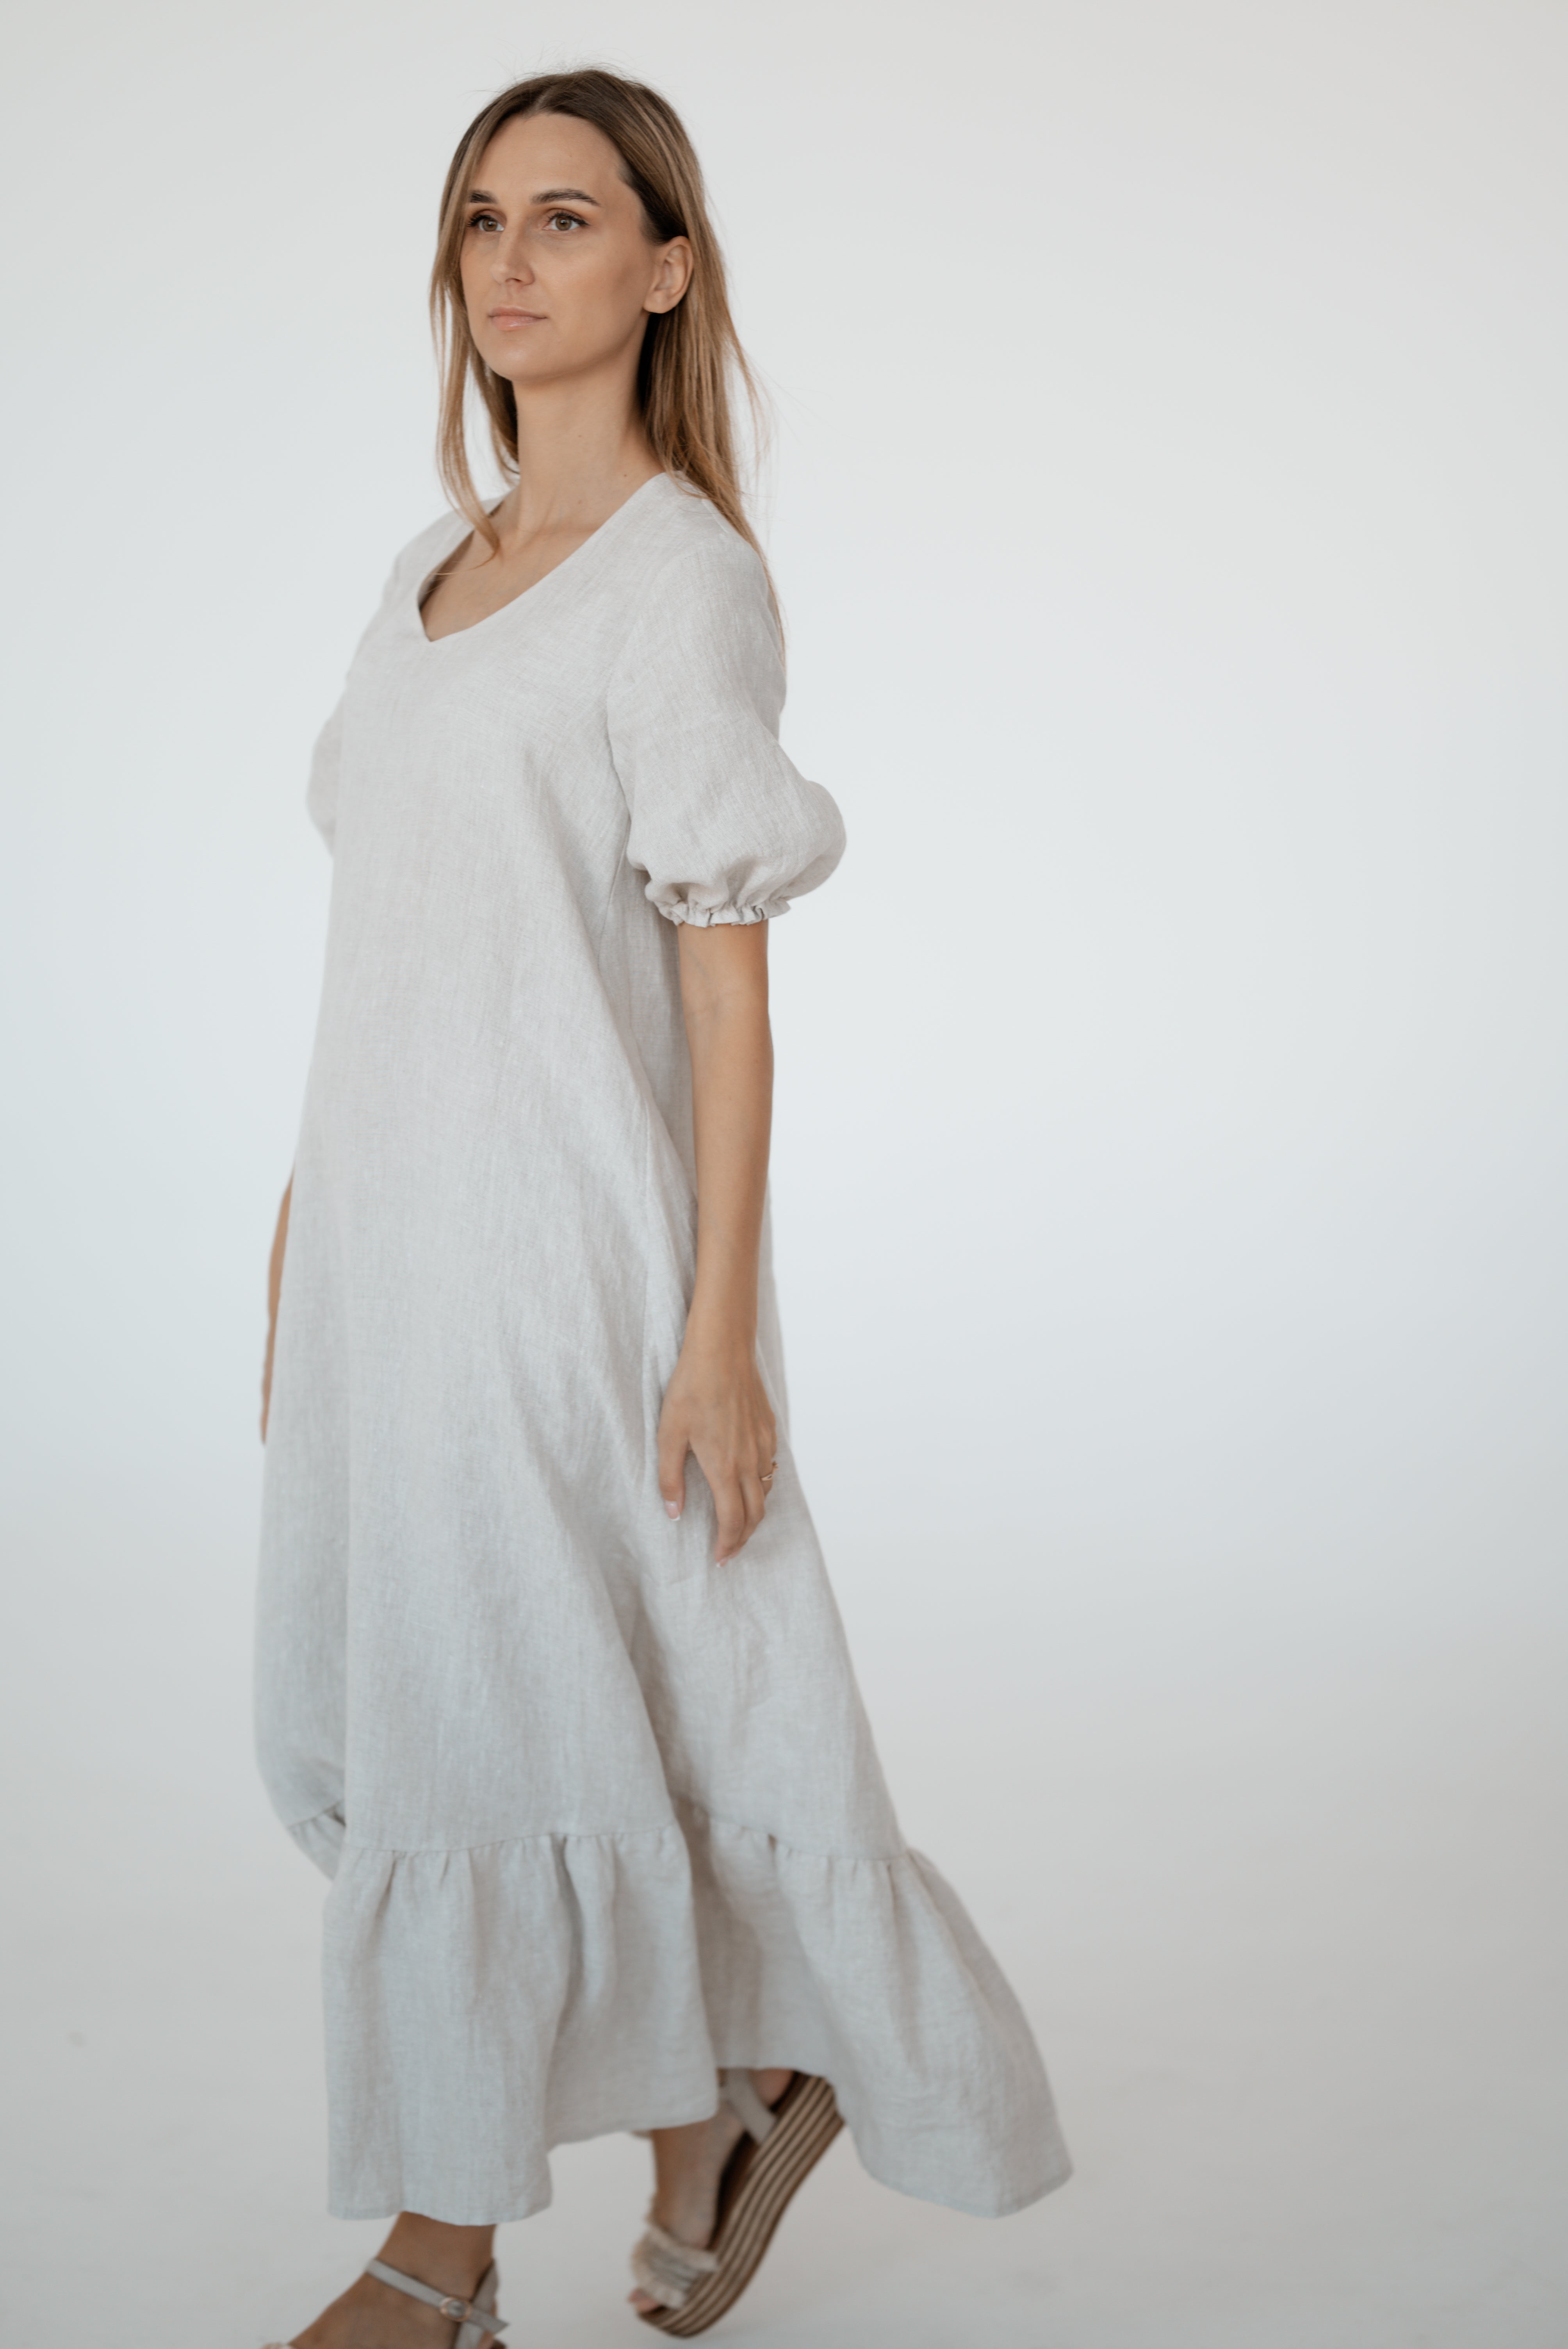 Linen dress CW023